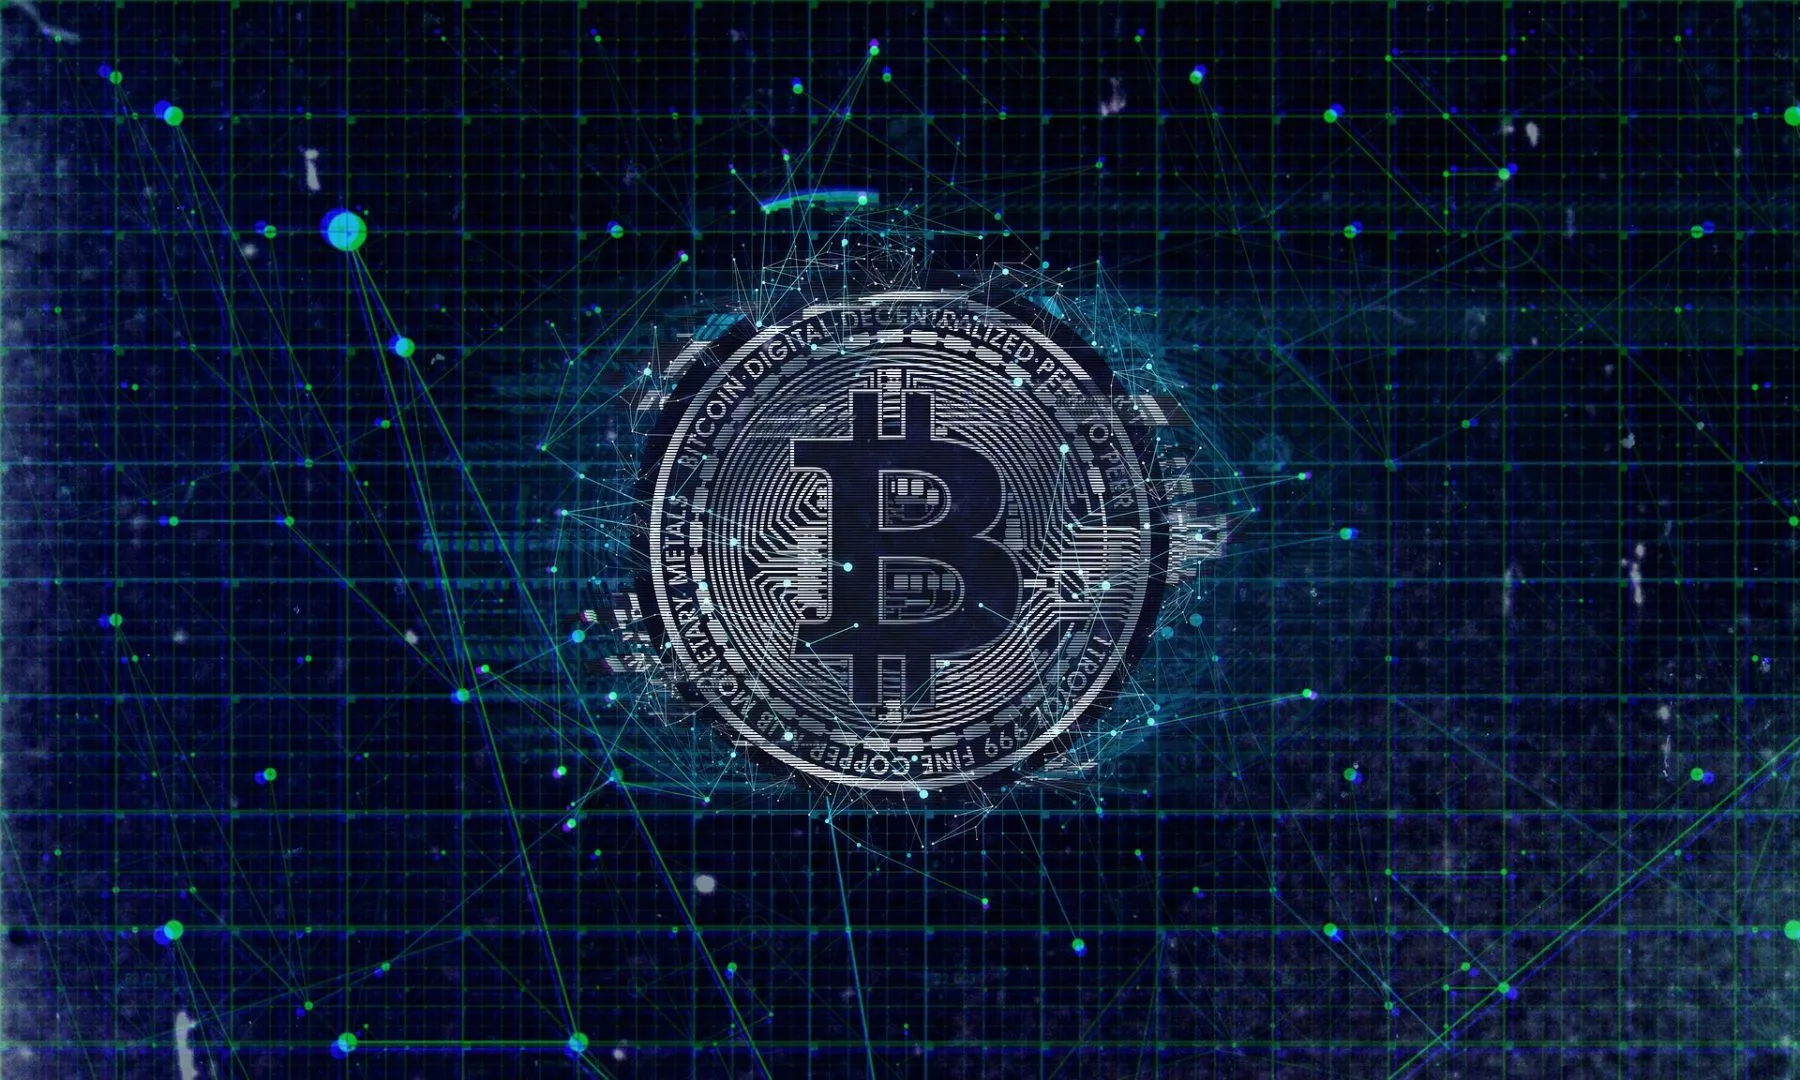 Kryptoin dient Nieuw Bitcoin ETF voorstel in